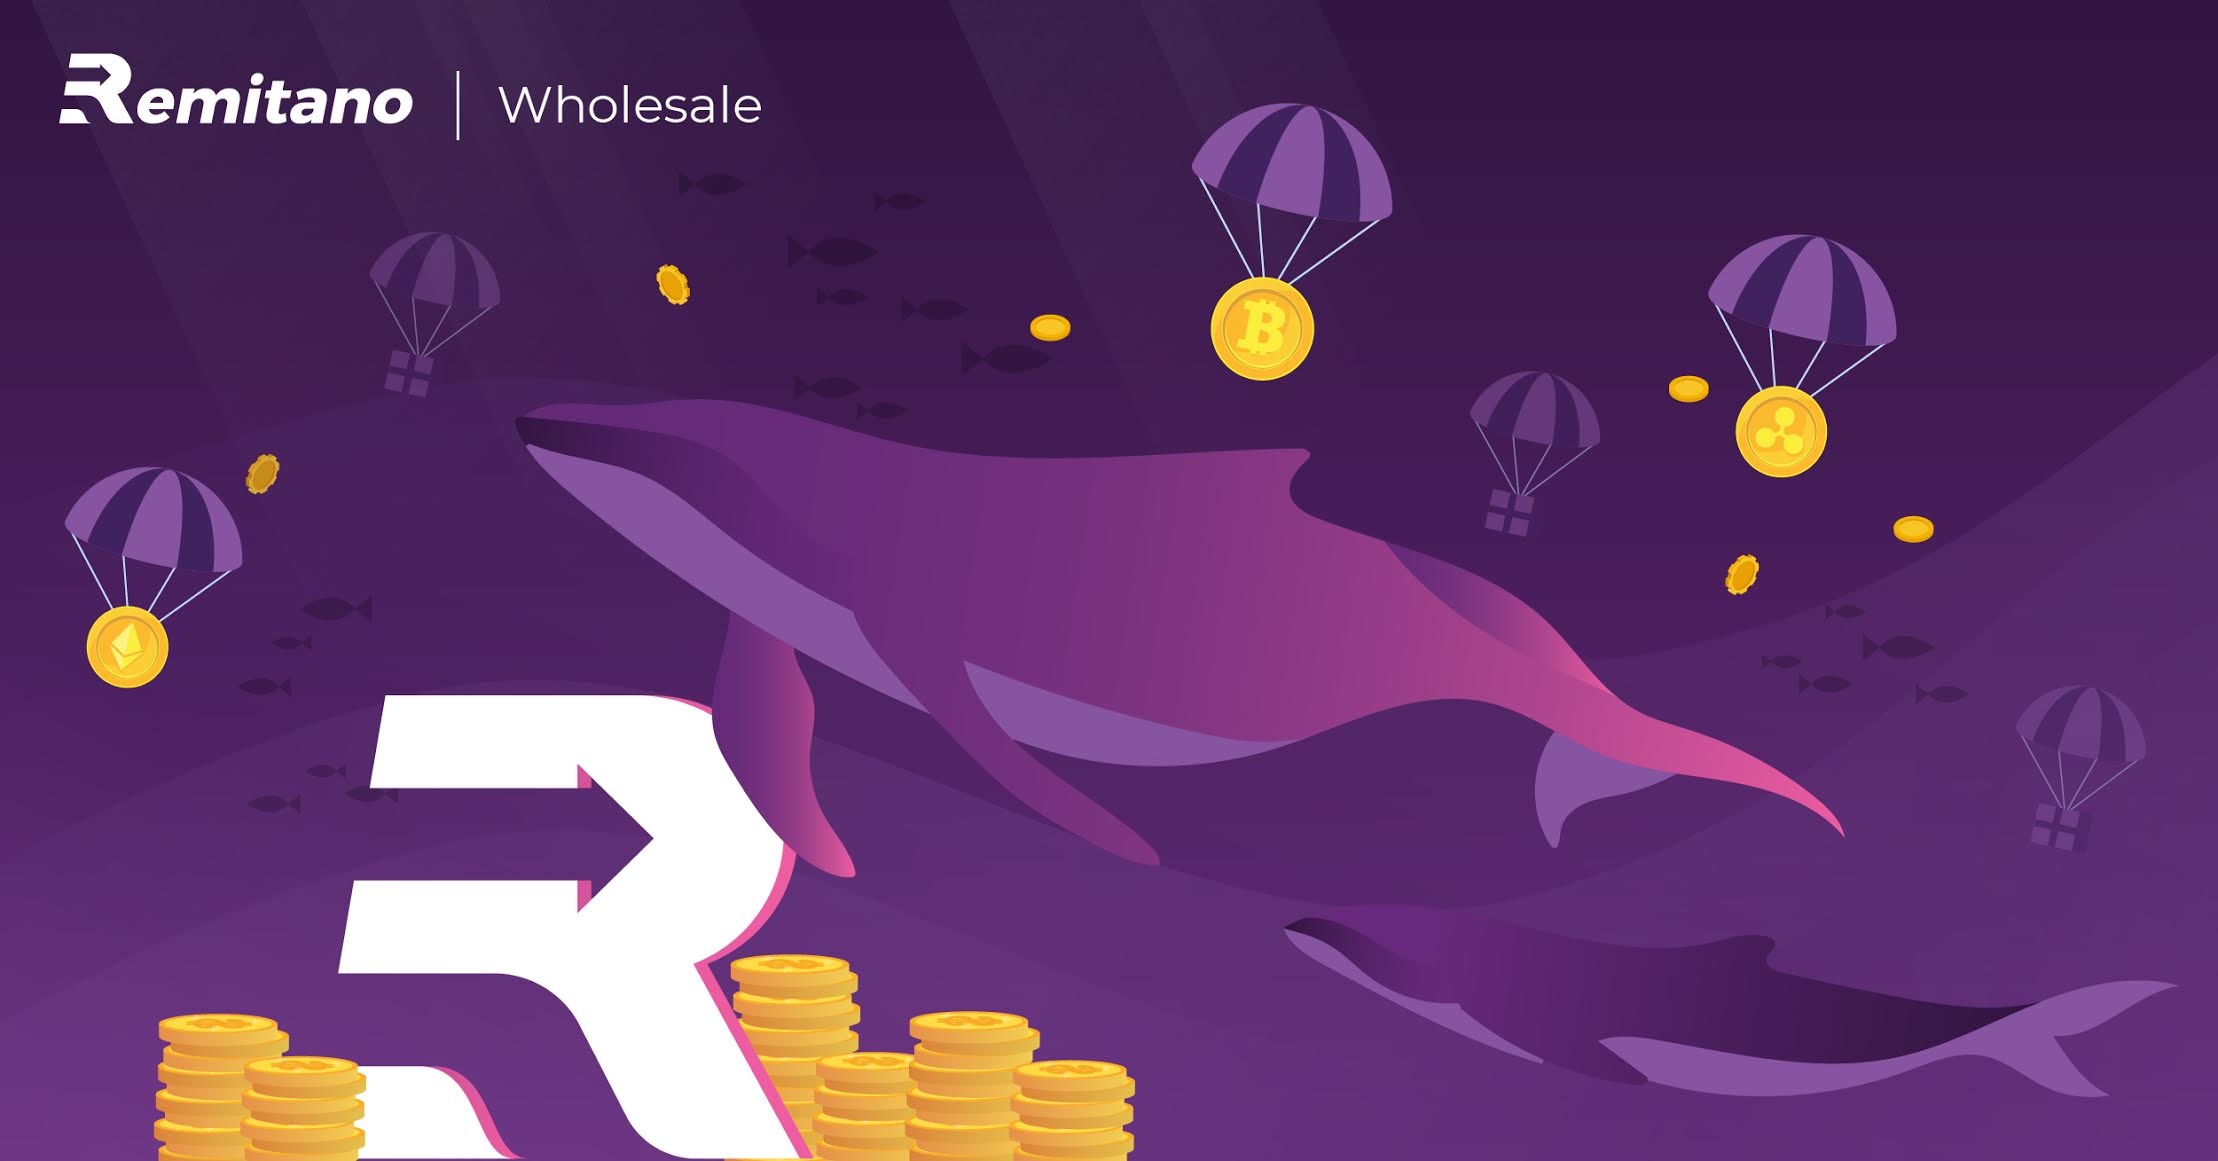 Remitano “chơi lớn” Airdrop đến 20,000 USD chỉ dành cho khách hàng kênh Wholesale mới